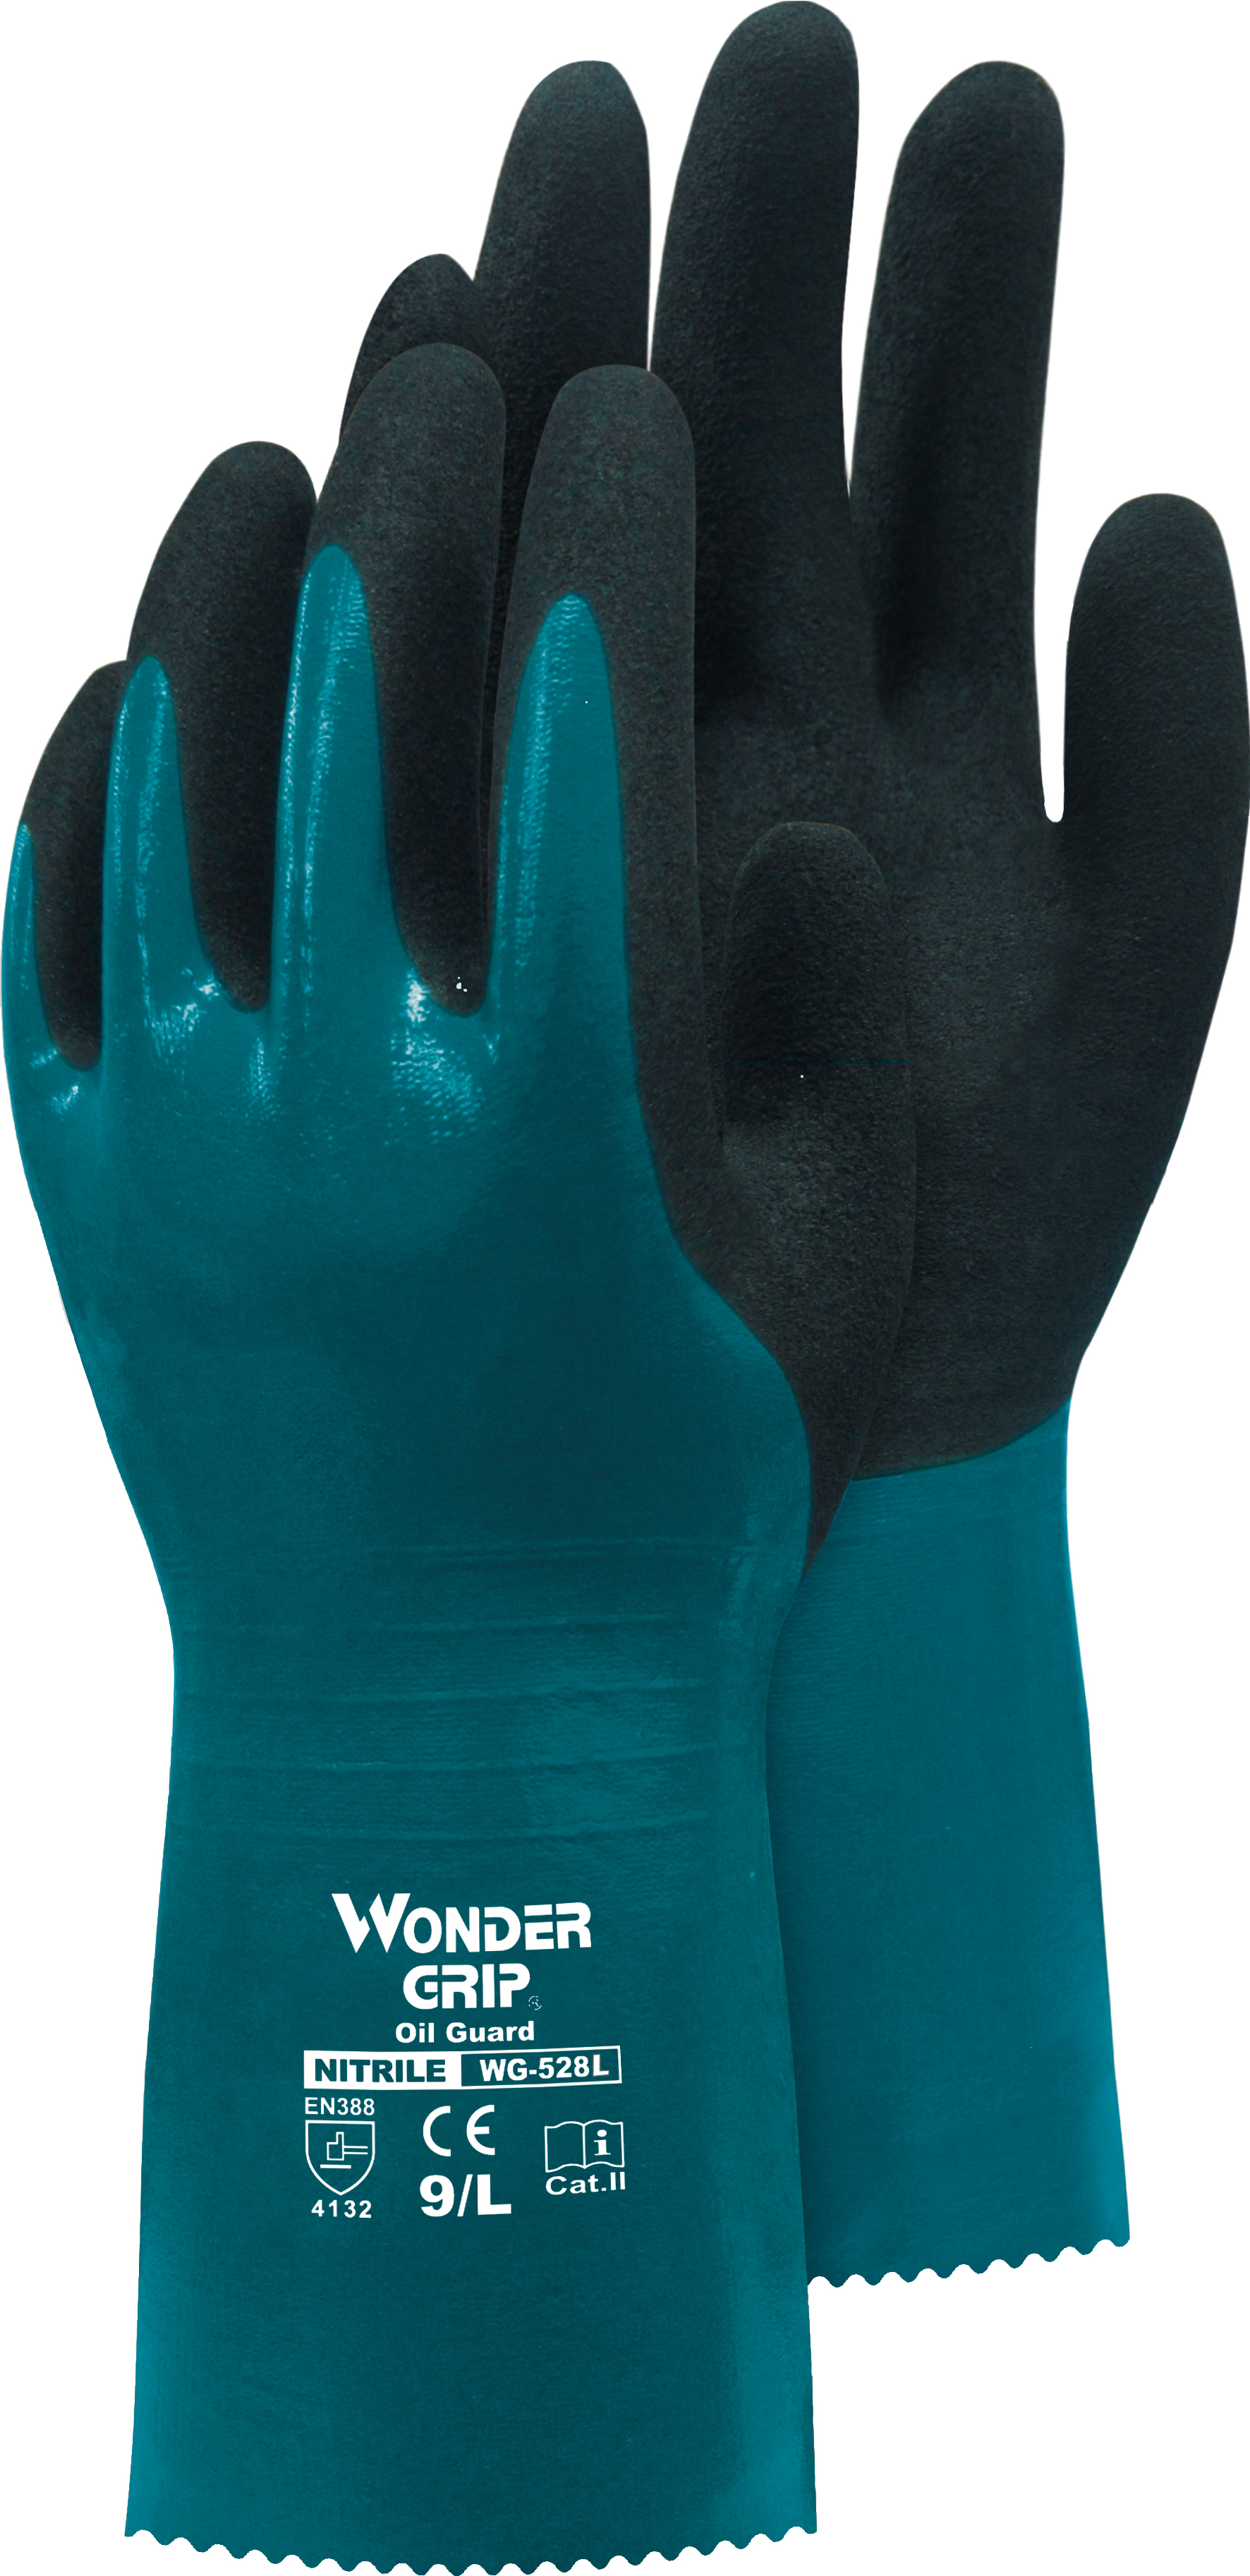 TRIUSO Handschuhe Wonder Grip Oil Guard blau 11 Nitril 3-Fach get.